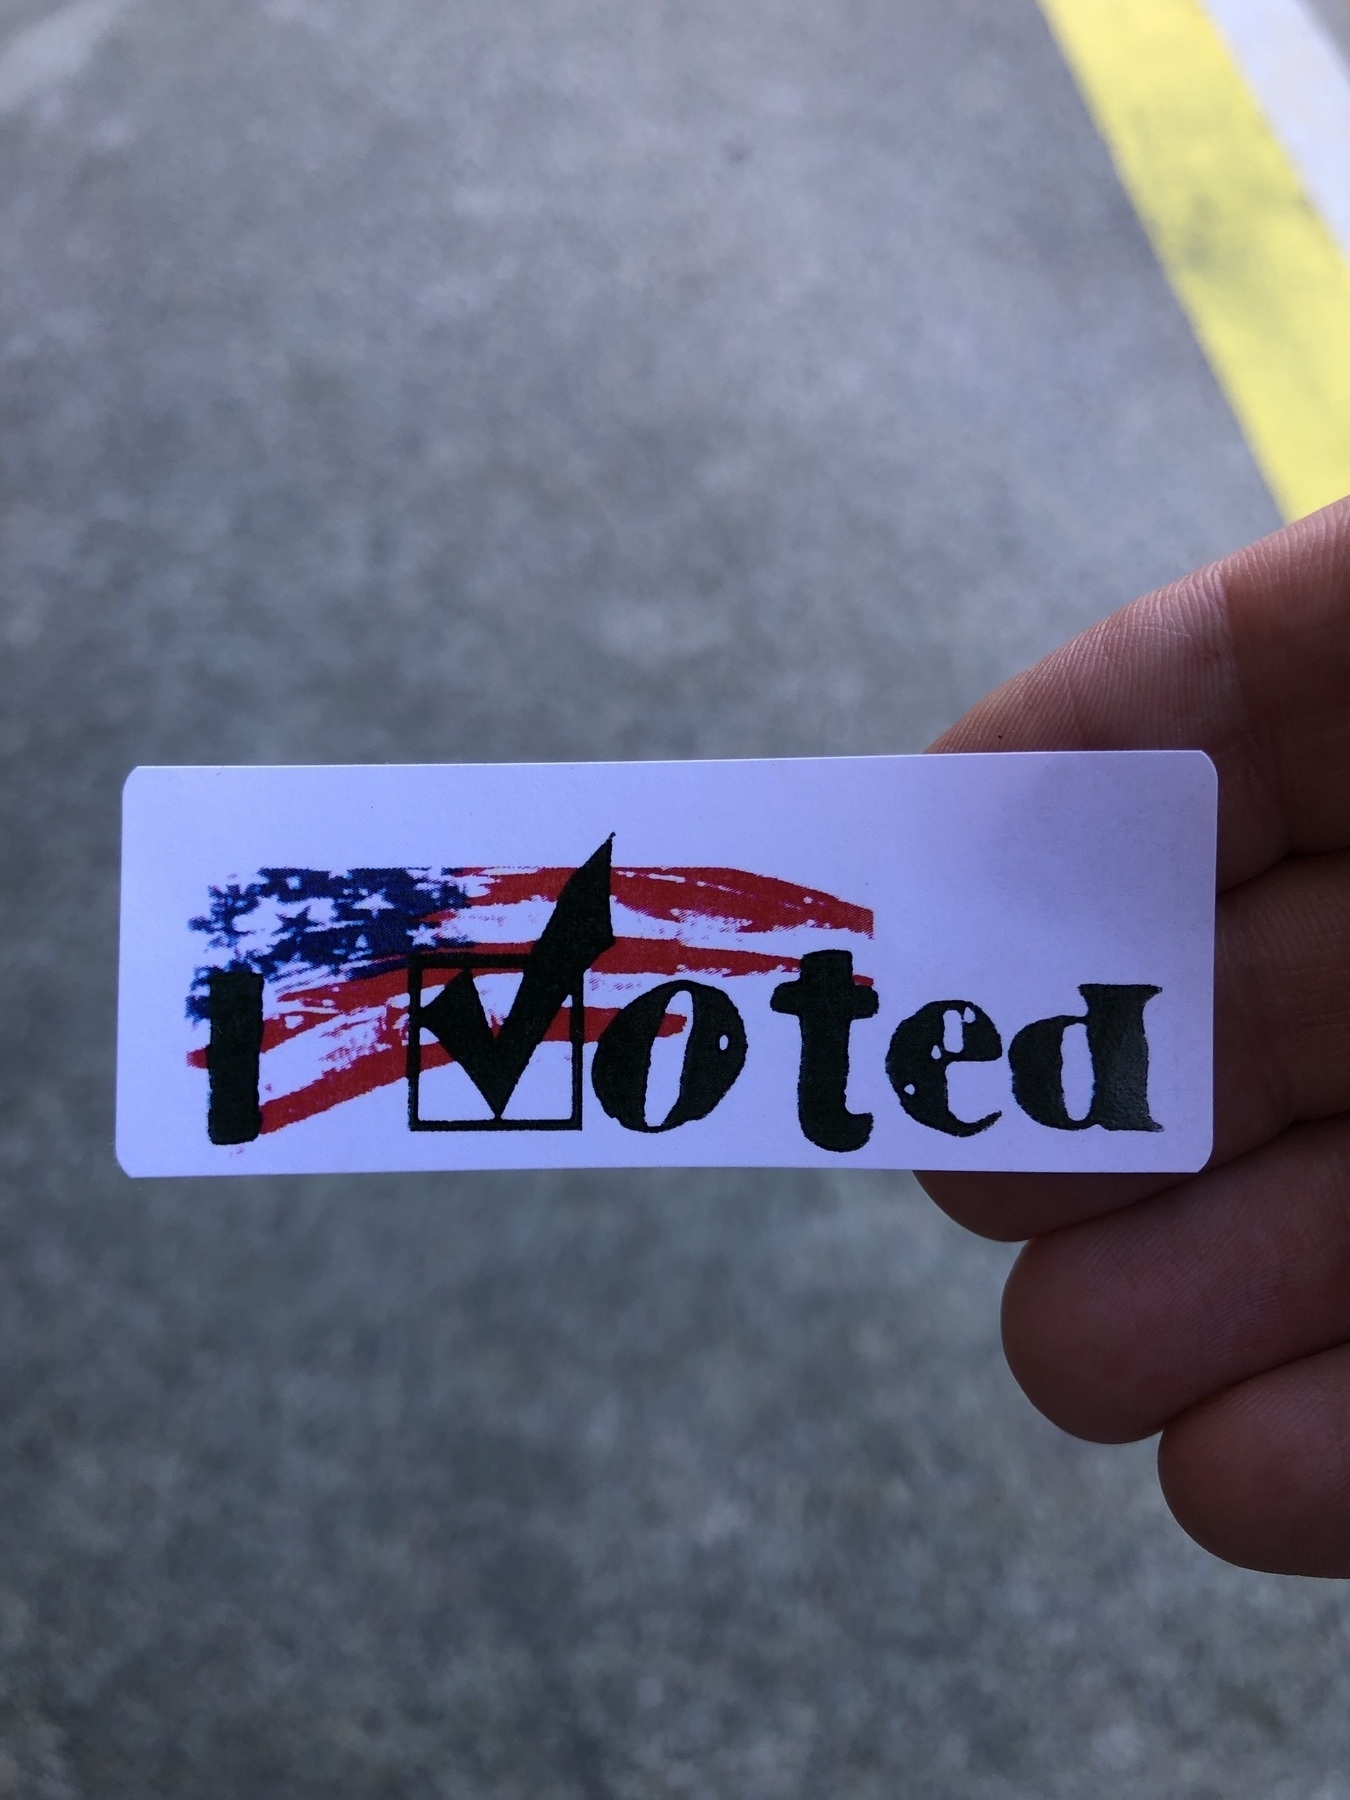 My “I voted” sticker